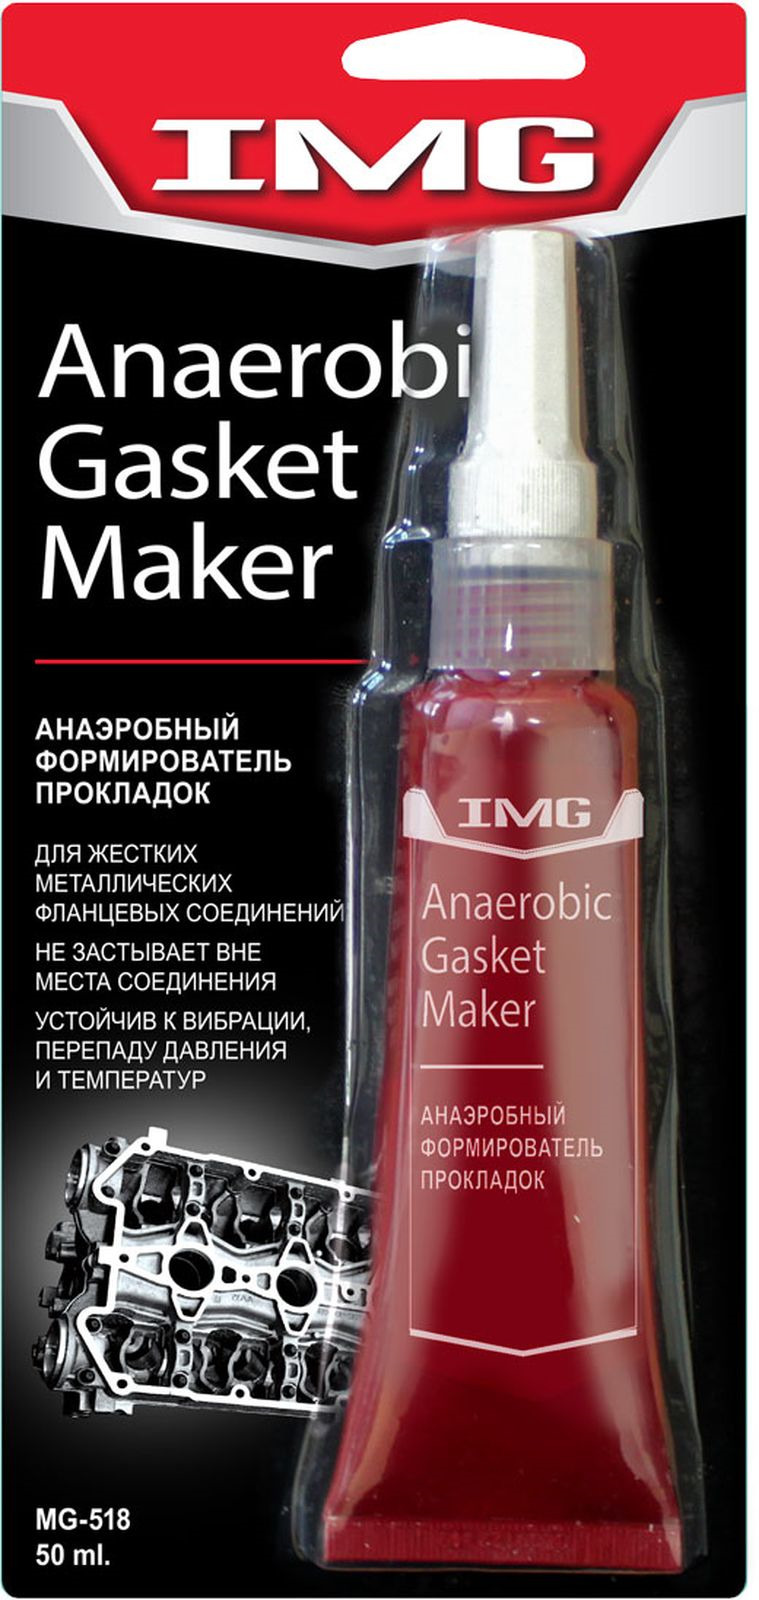 фото Формирователь прокладок IMG, красный, анаэробный, 50 мл Img chemicals corporation